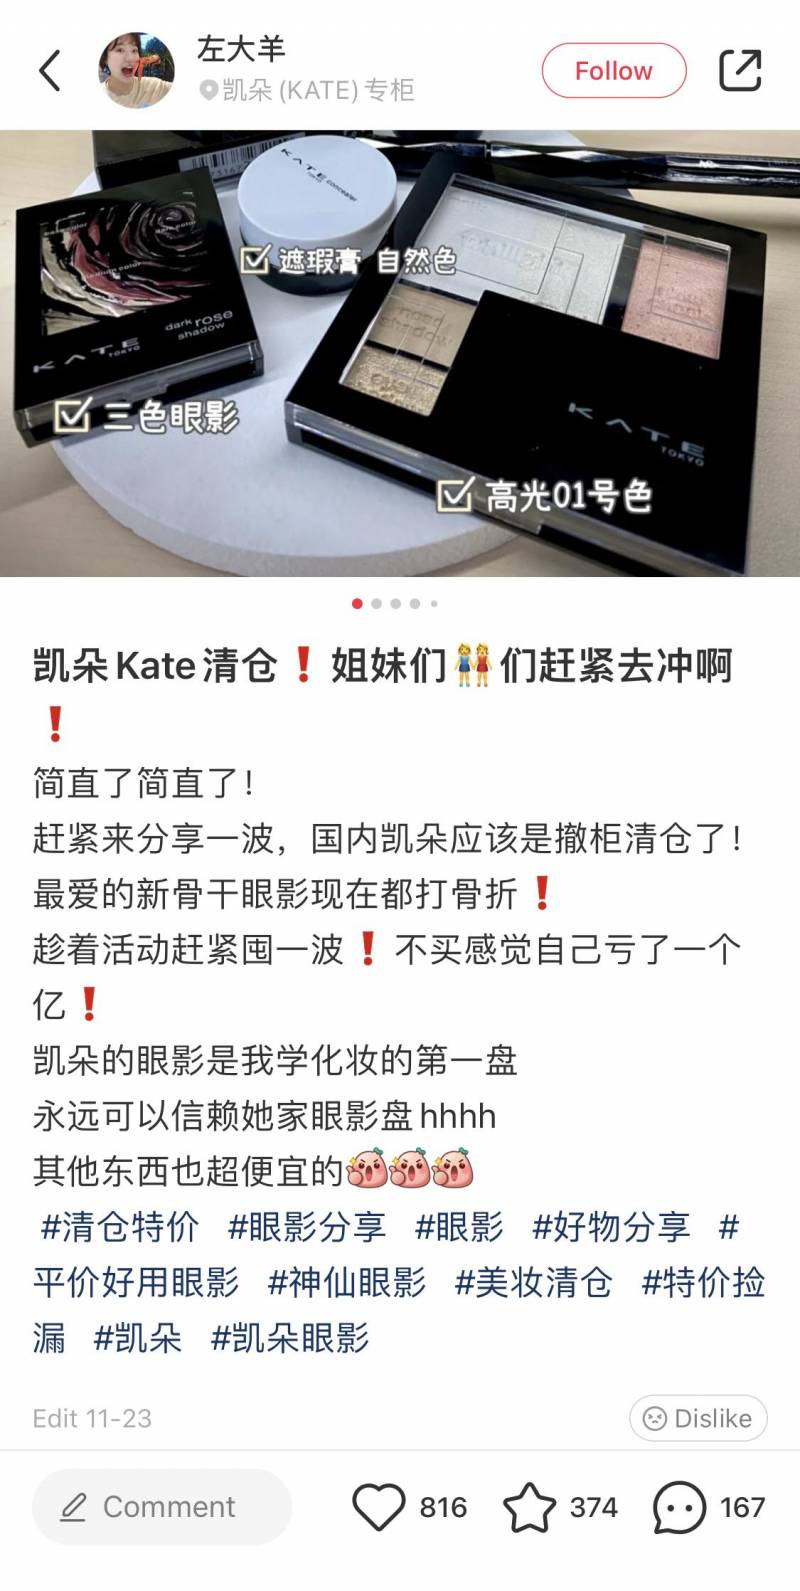 KATE凯朵的微博引发热议，日本彩妆品牌是否撤出中国市场？